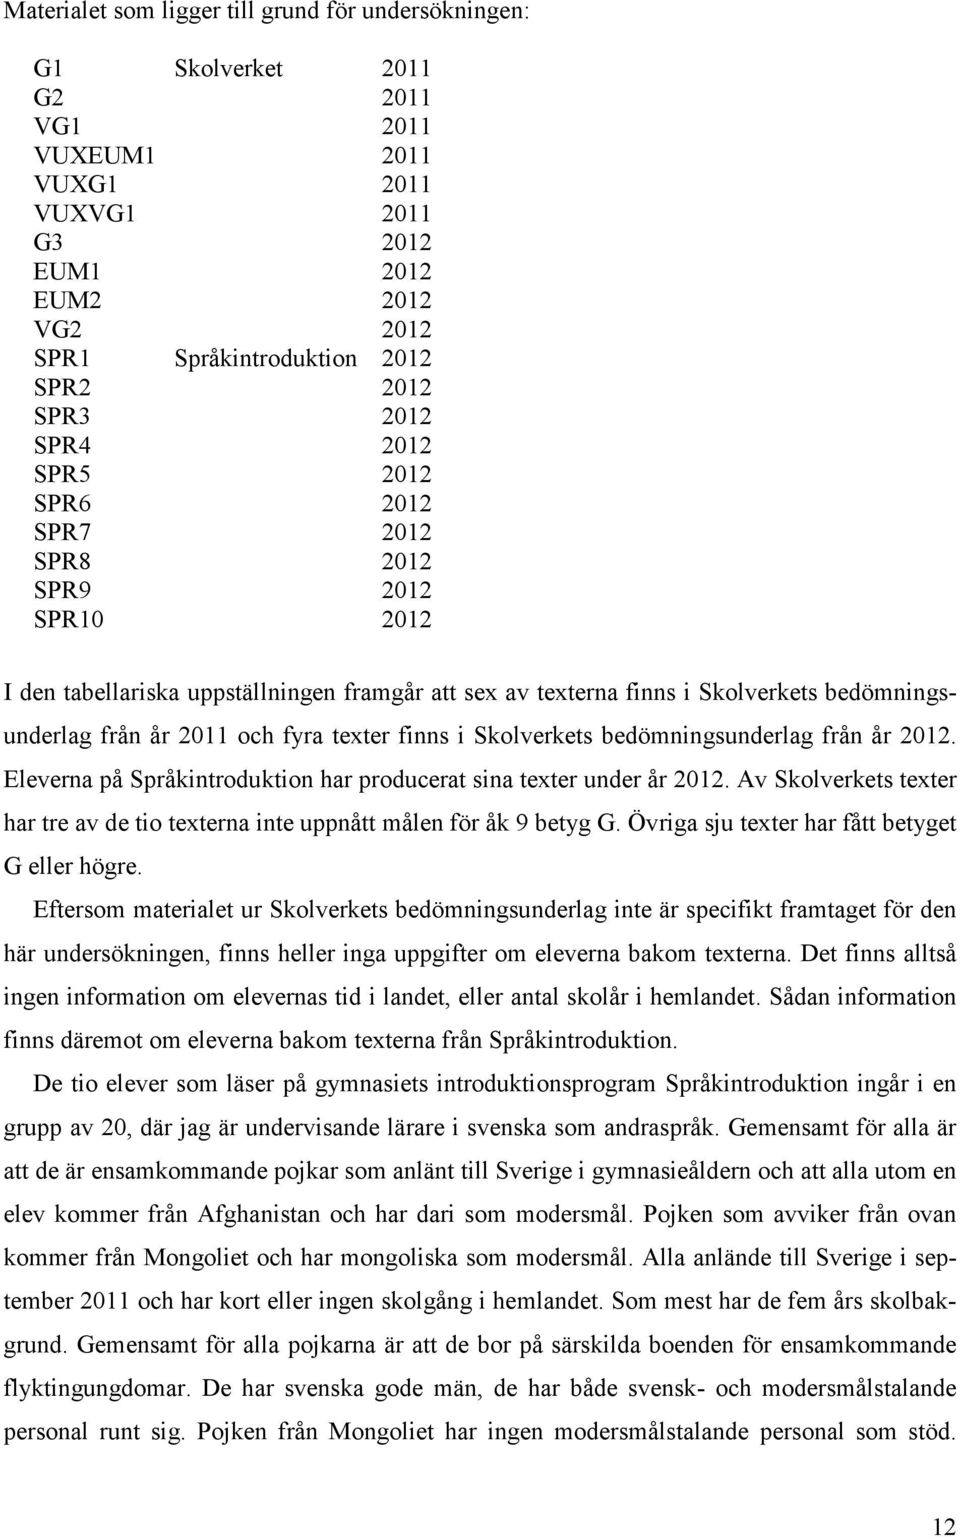 fyra texter finns i Skolverkets bedömningsunderlag från år 2012. Eleverna på Språkintroduktion har producerat sina texter under år 2012.